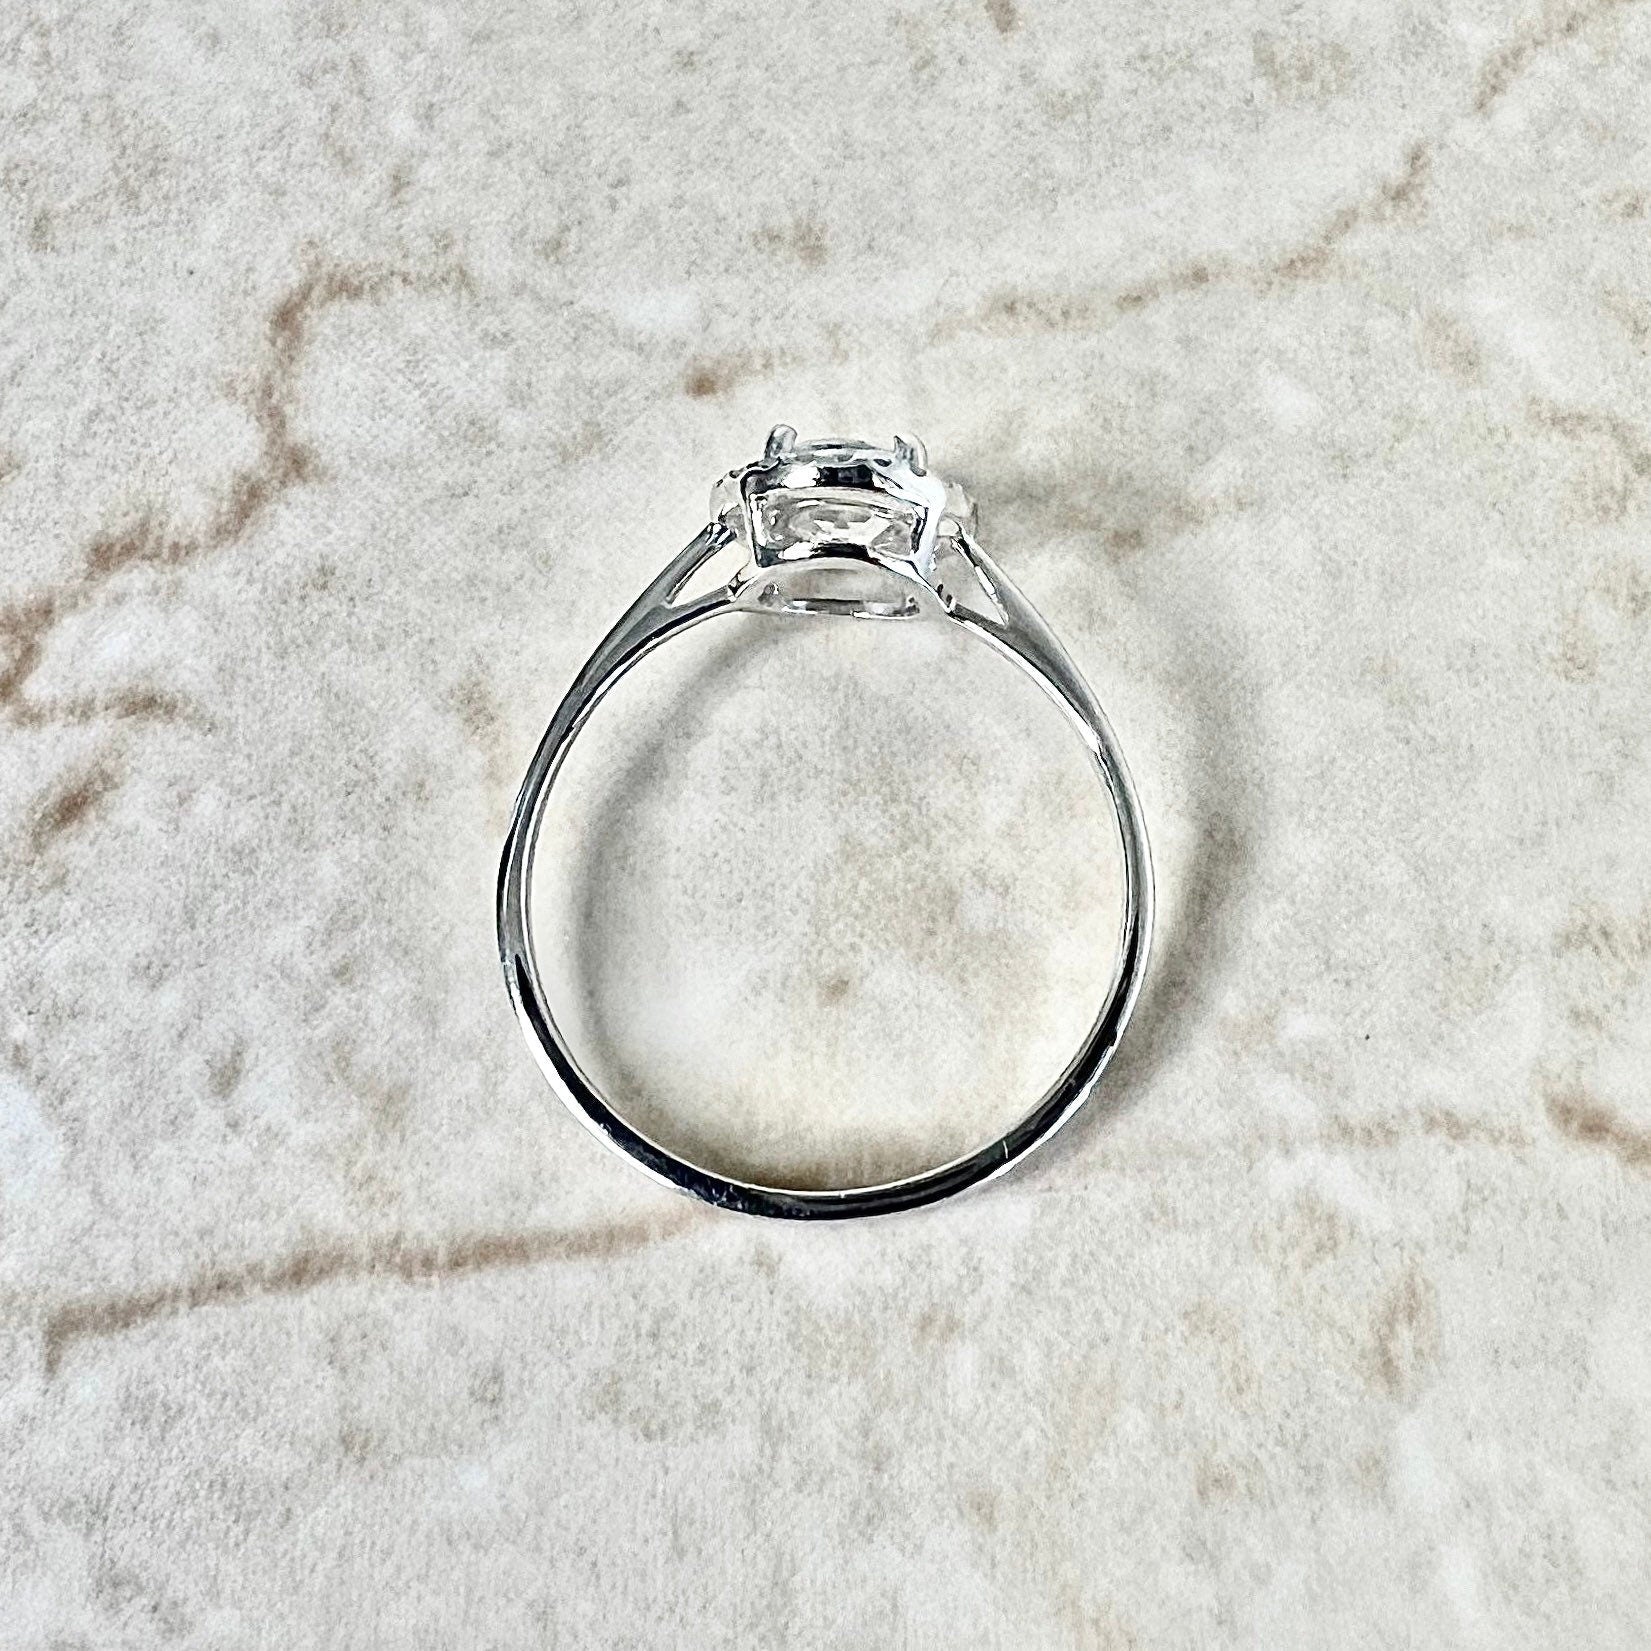 14K Round White Topaz Halo Ring - White Gold White Topaz Ring - Diamond Halo Ring - Topaz Promise Ring - November Birthstone - Birthday Gift